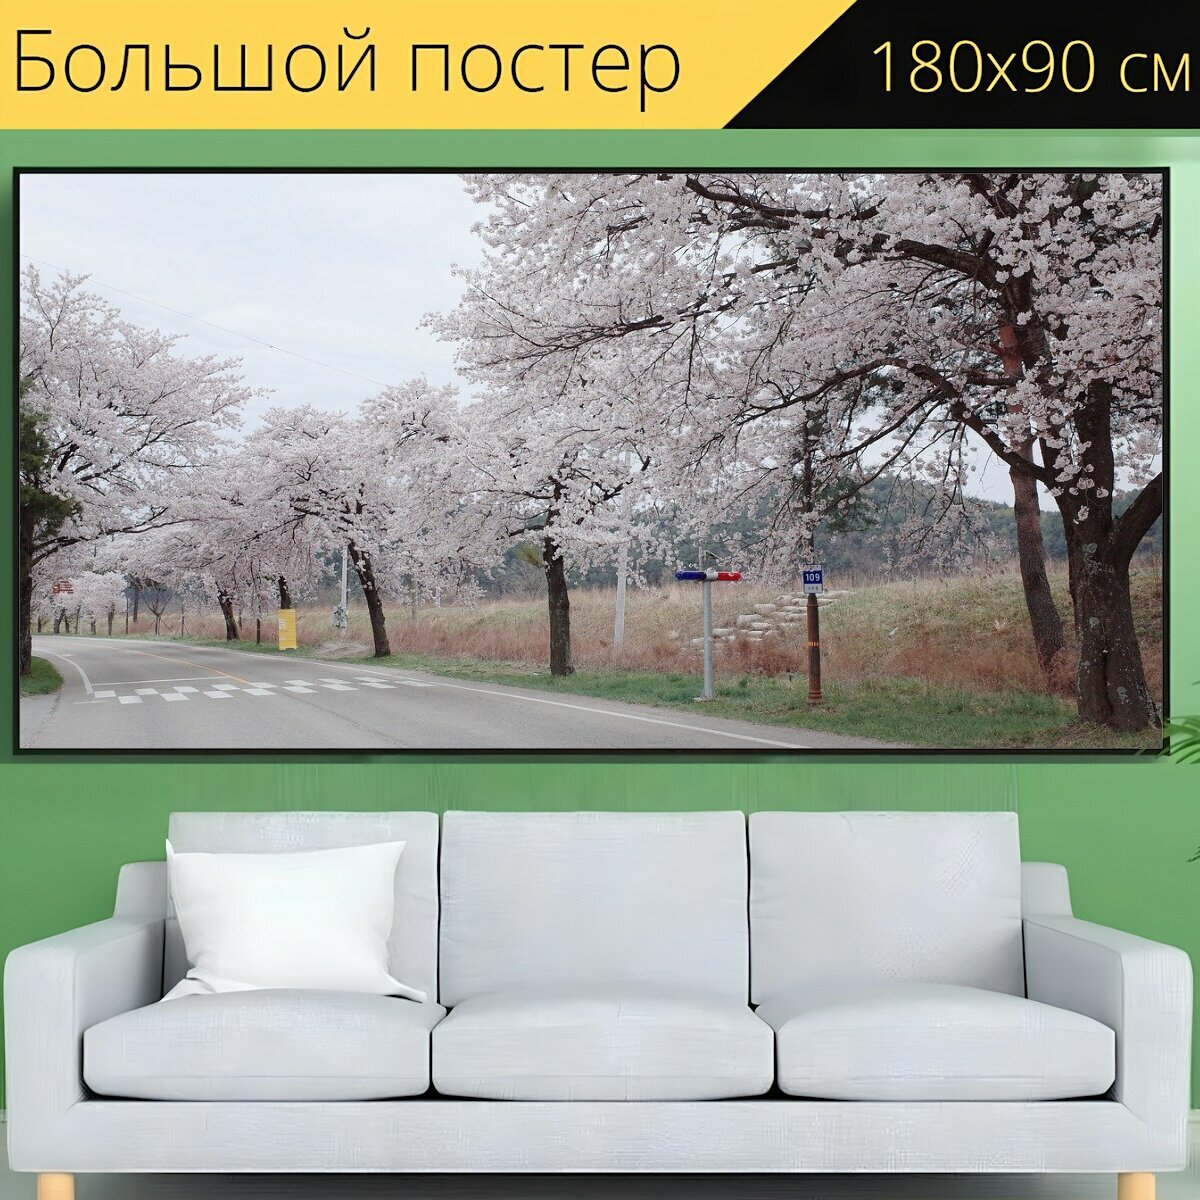 Большой постер "Республика корея, вишня в цвету, цветок" 180 x 90 см. для интерьера